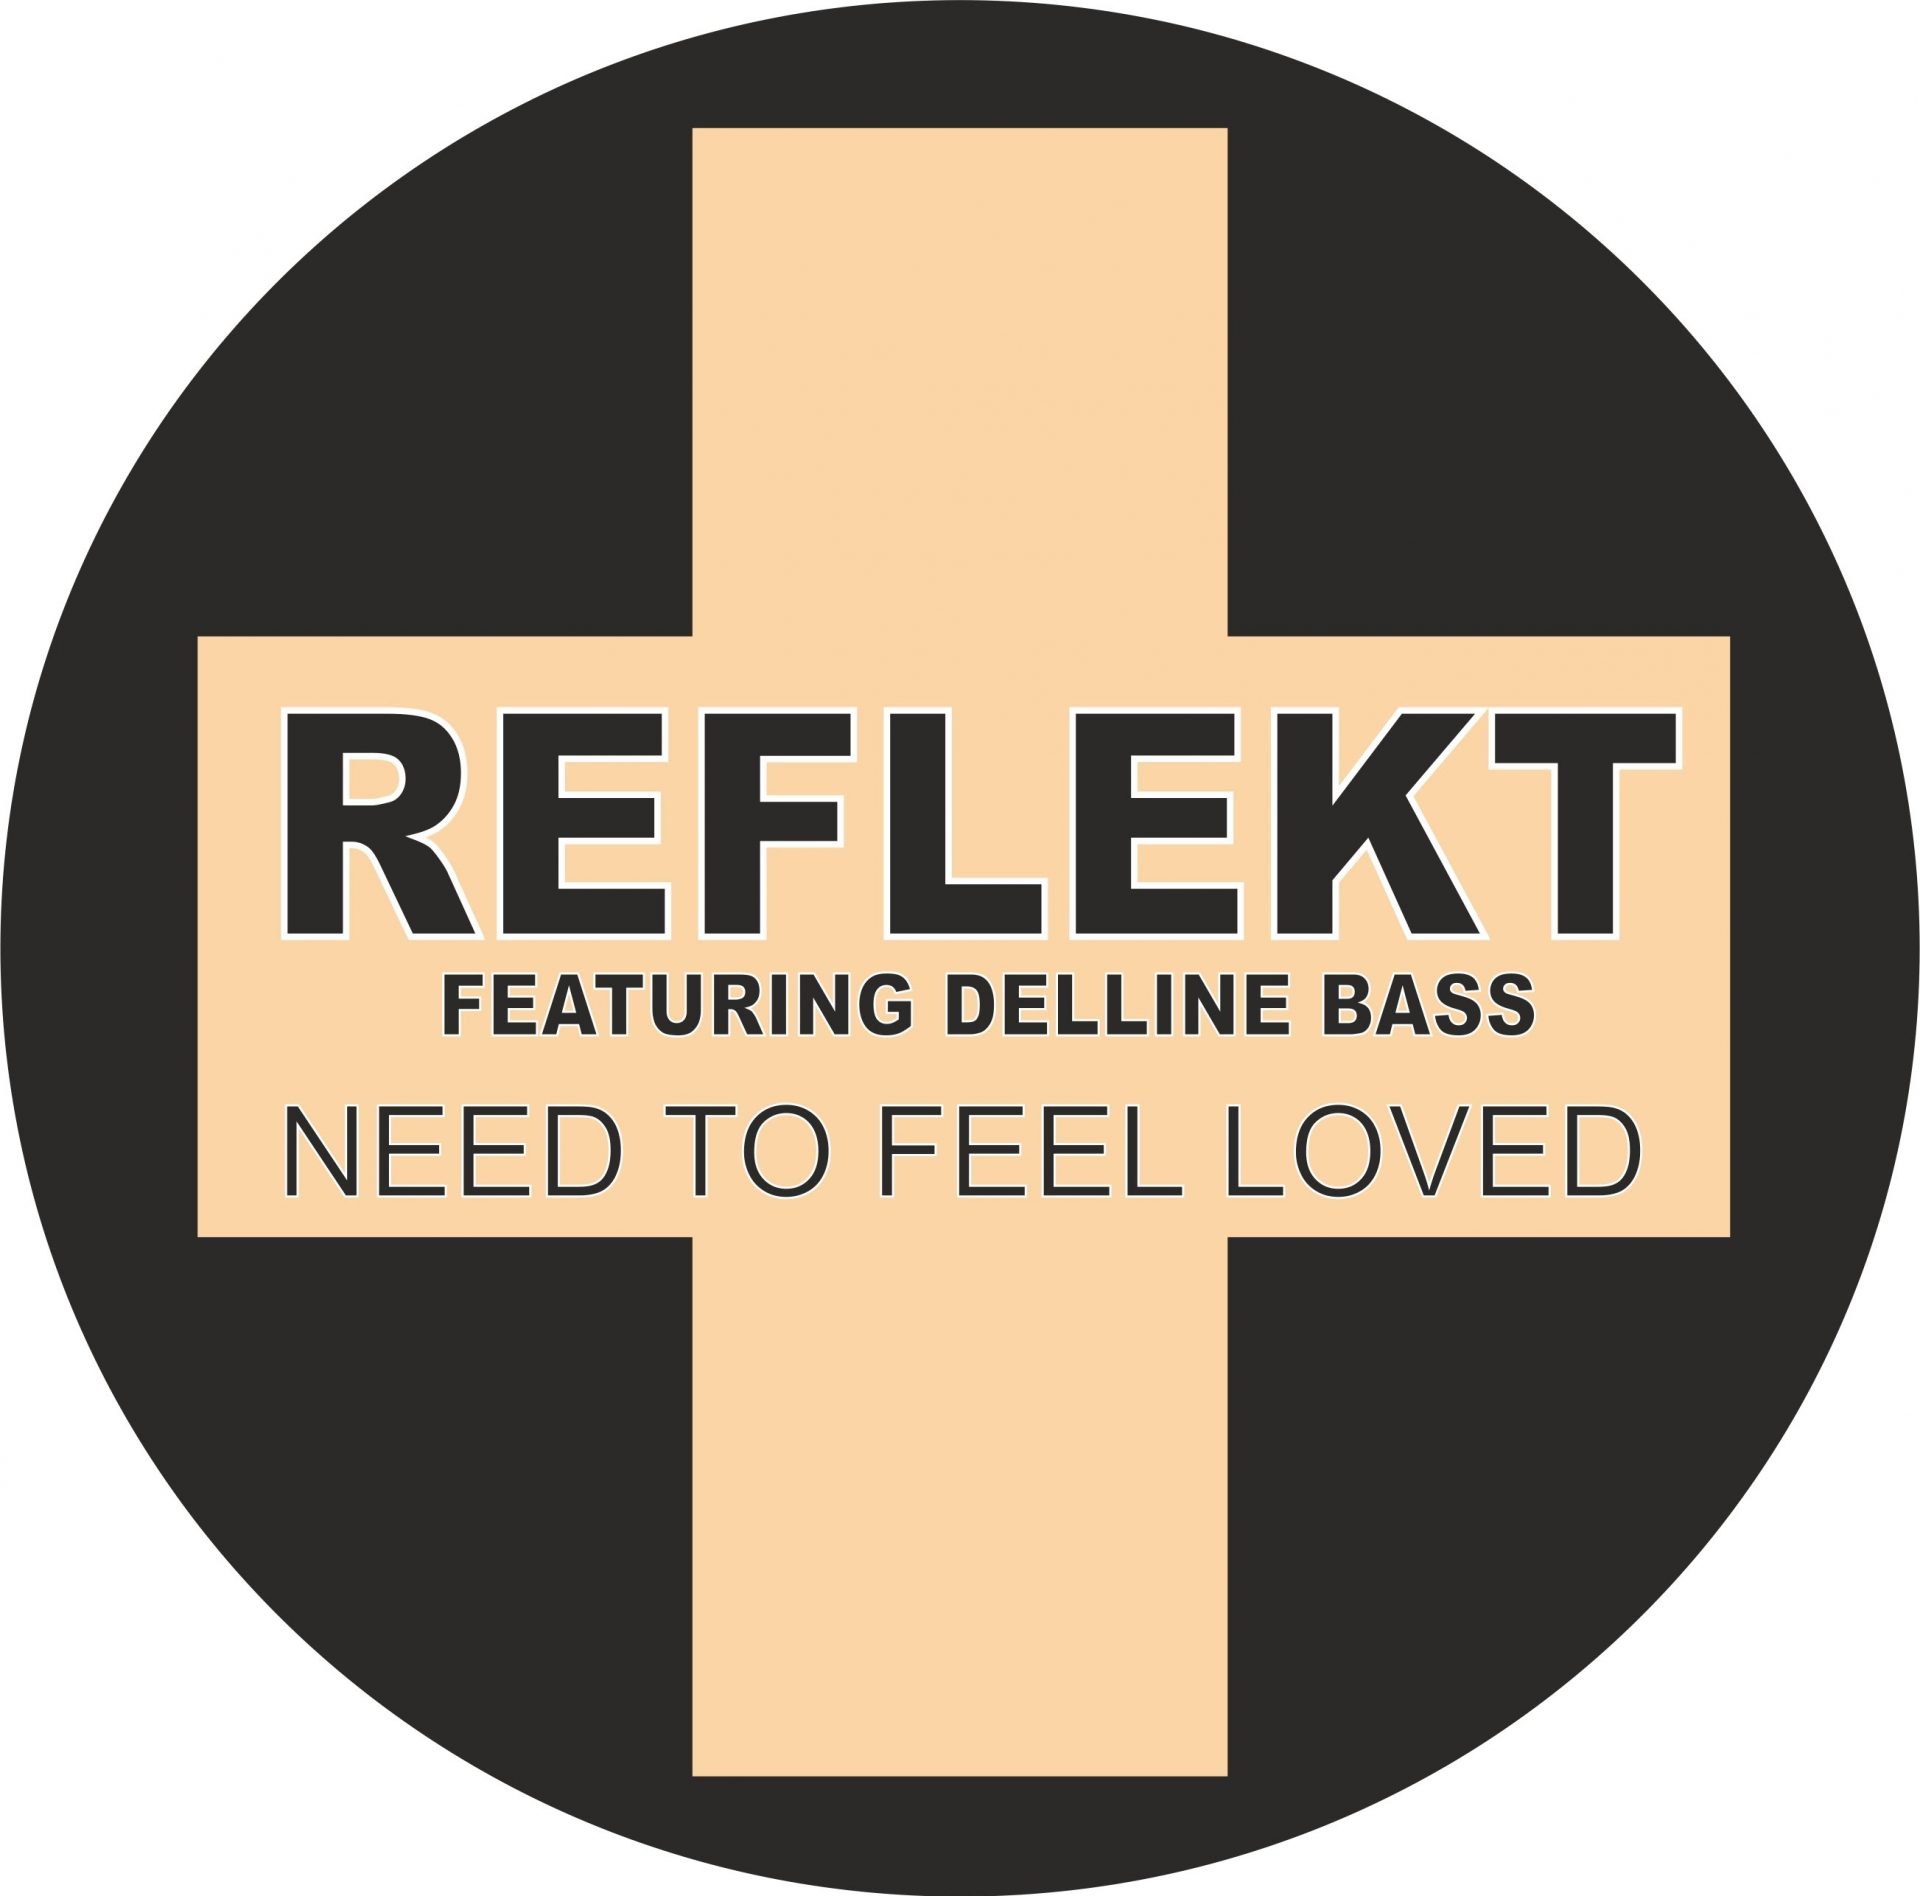 Need to feel loved reflekt feat. Reflekt ft. Delline Bass need to feel Loved. Reflekt feat. Delline Bass. Reflekt need to feel Loved. Adam k Soha need to feel Loved.